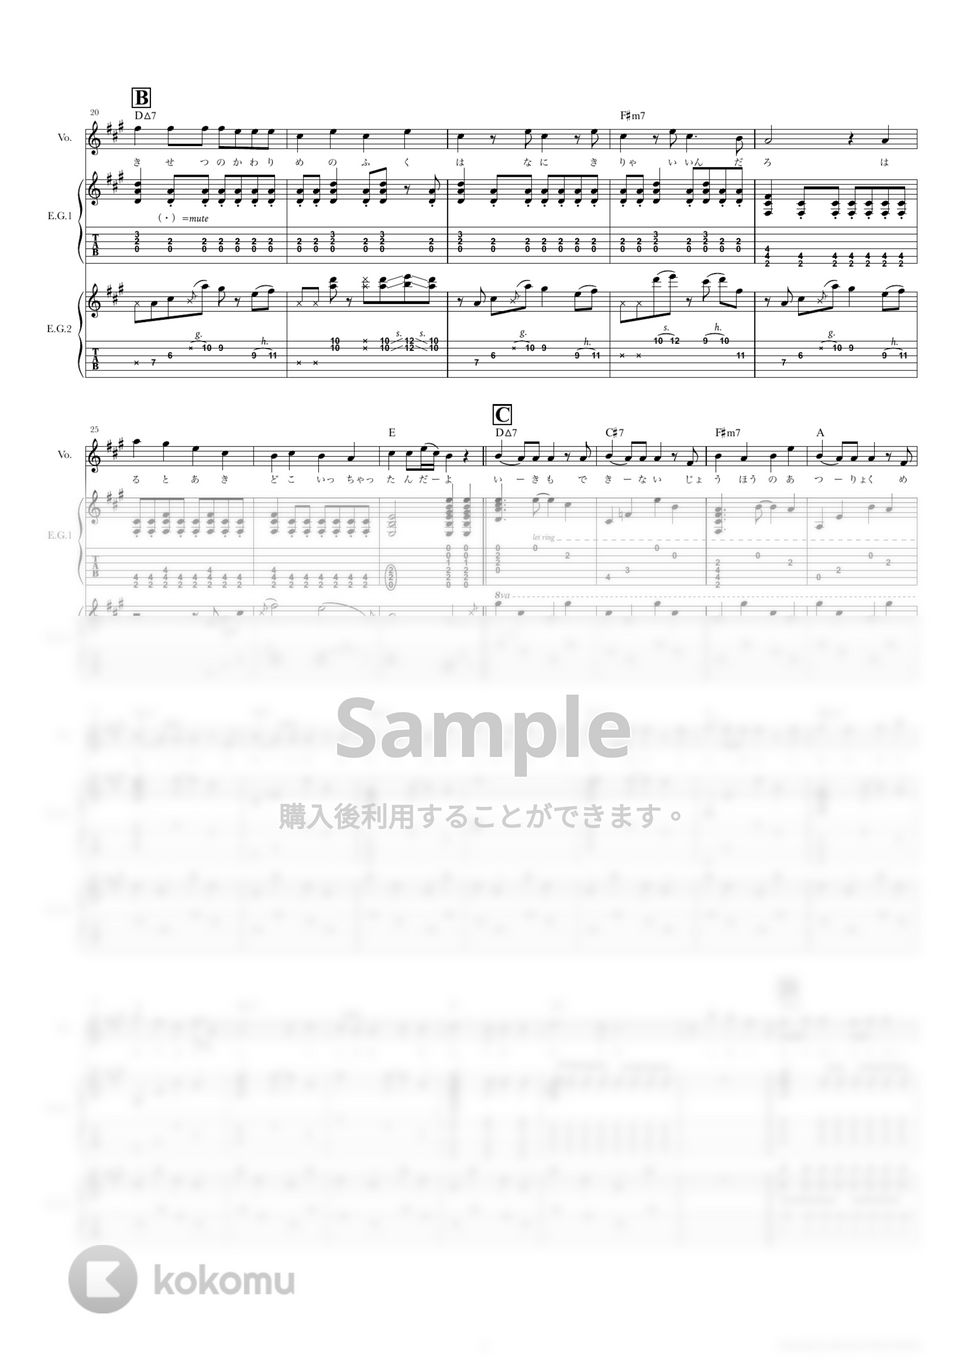 結束バンド - ギターと孤独と蒼い惑星 (ギタースコア・歌詞・コード付き) by TRIAD GUITAR SCHOOL